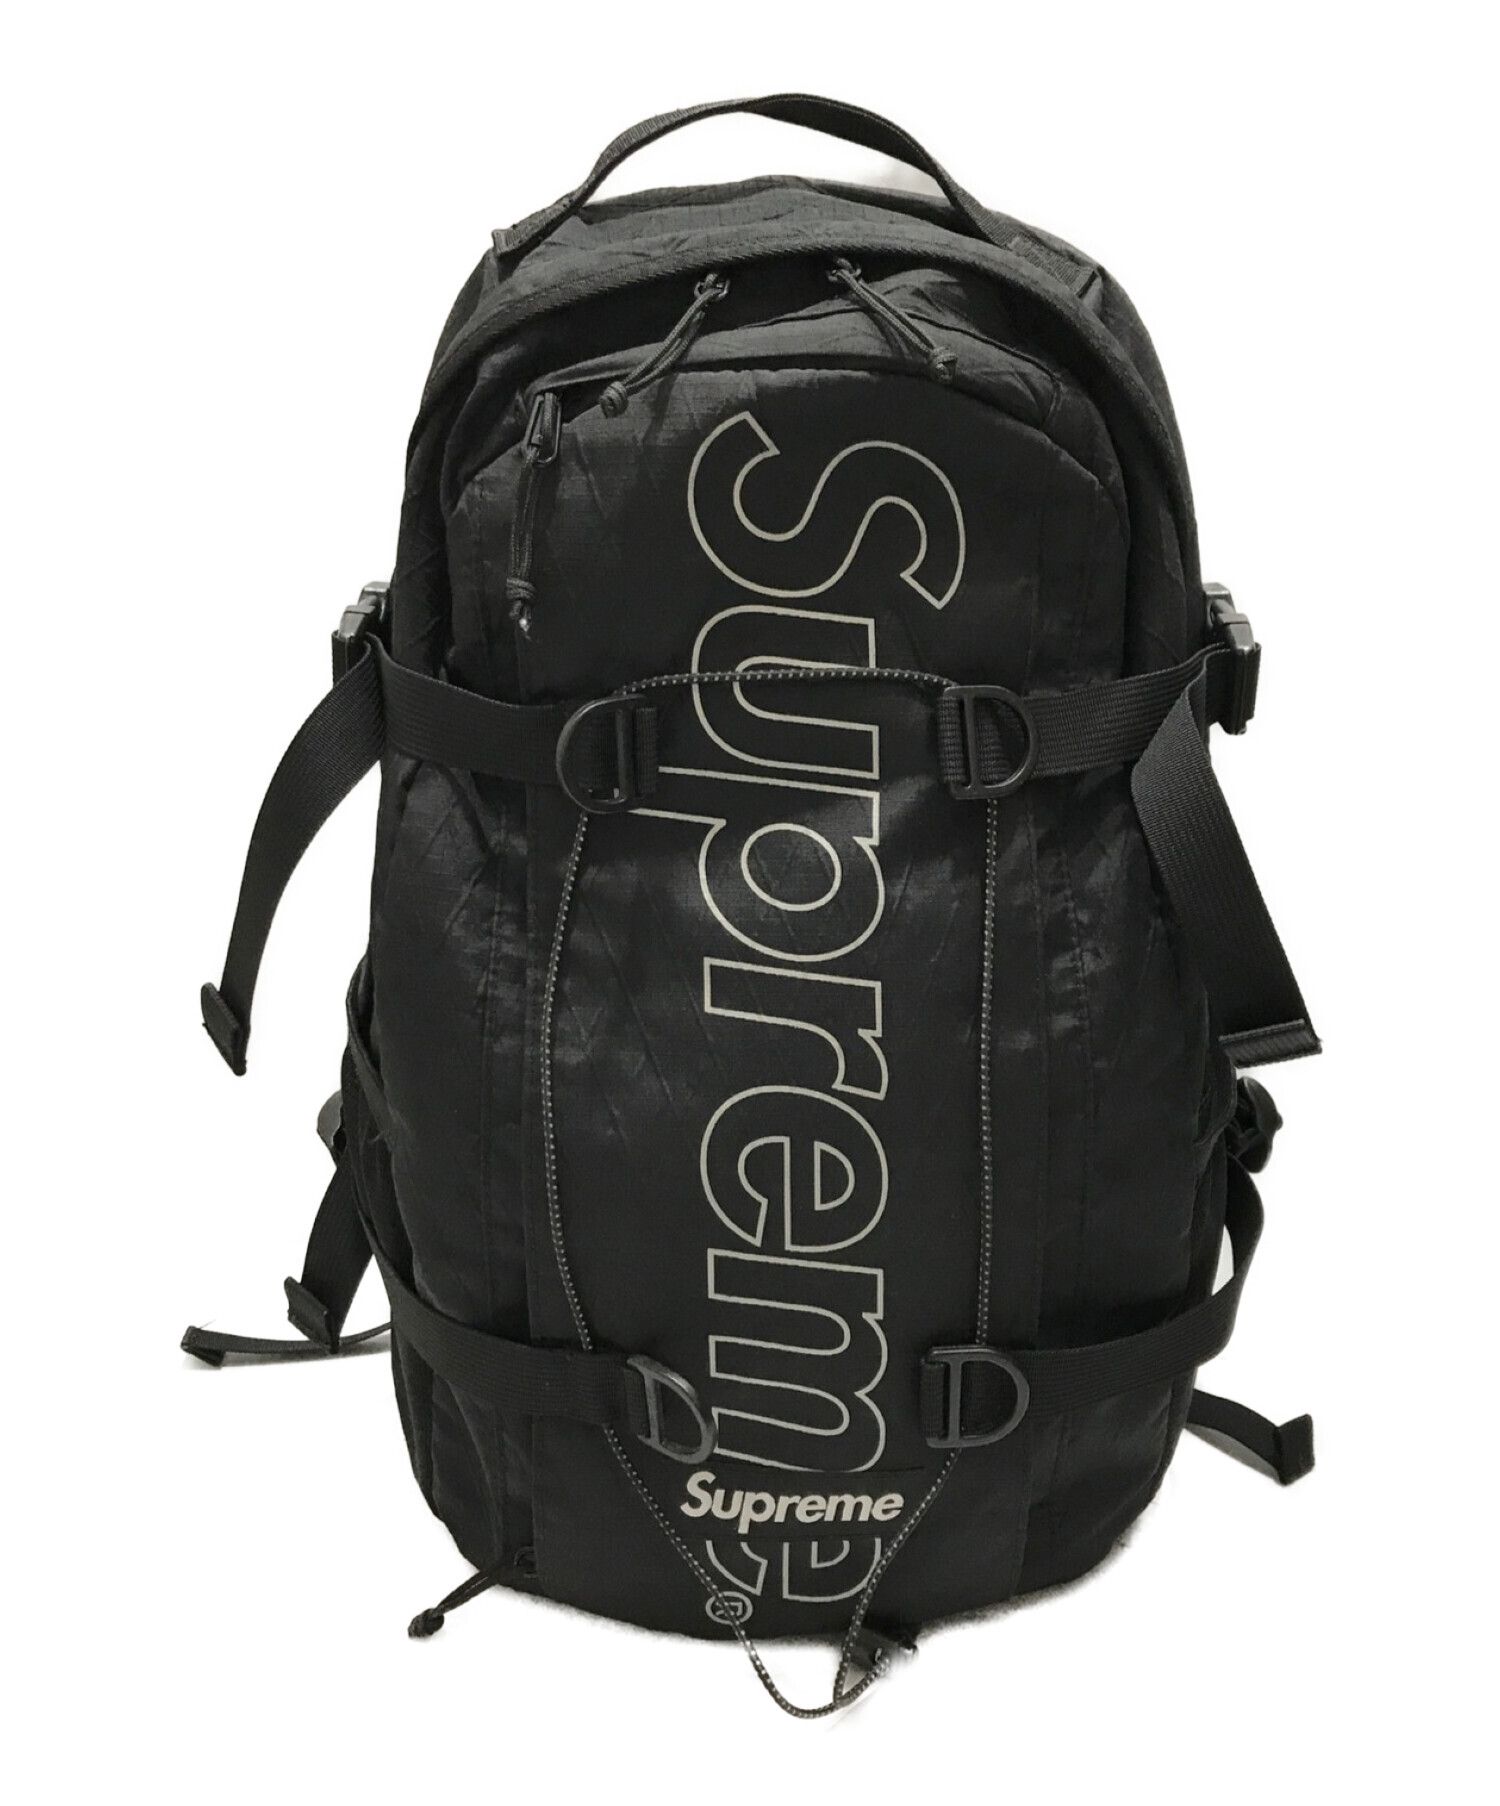 supreme】Supreme Backpack 18AW Black www.krzysztofbialy.com